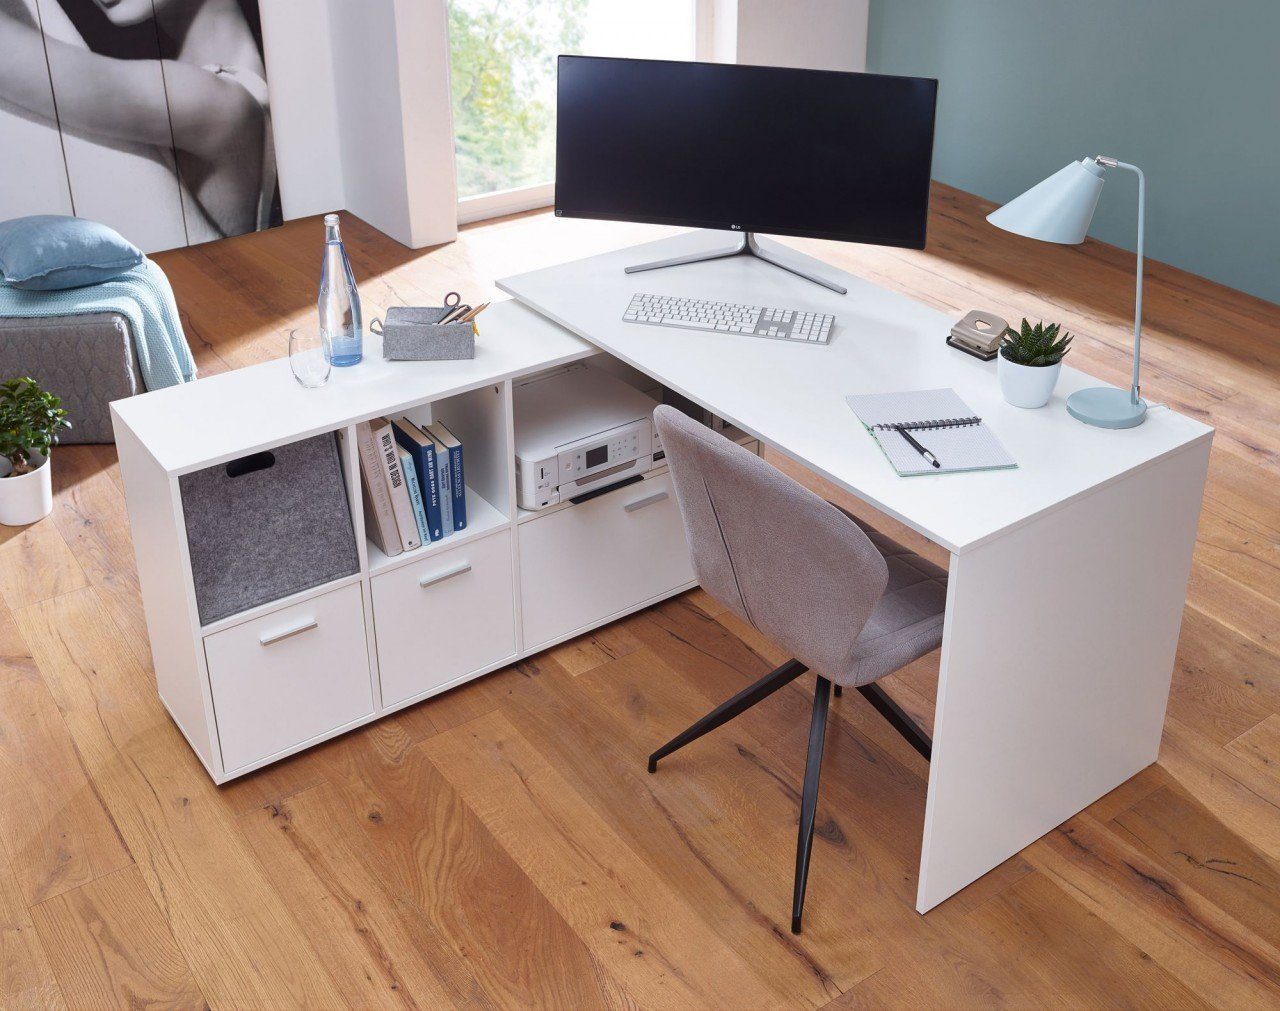 Schreibtischkombination furnicato mit Schreibtisch Weiß 136x75,5x155,5 cm Sideboard